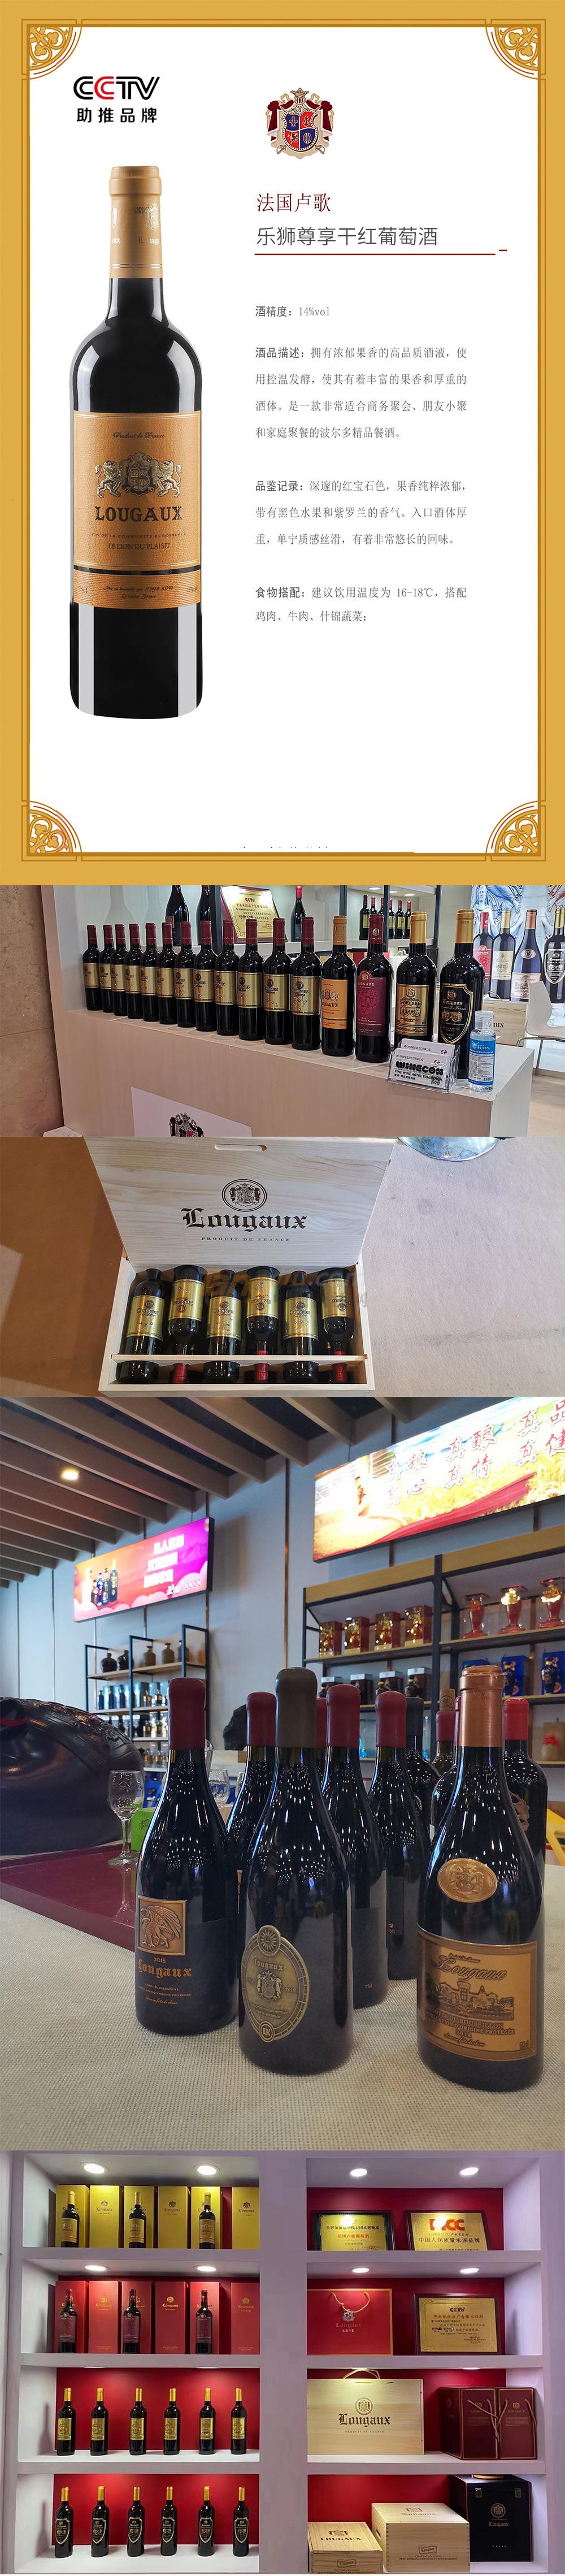 法国卢歌乐狮尊悦干红葡萄酒产品介绍.jpg